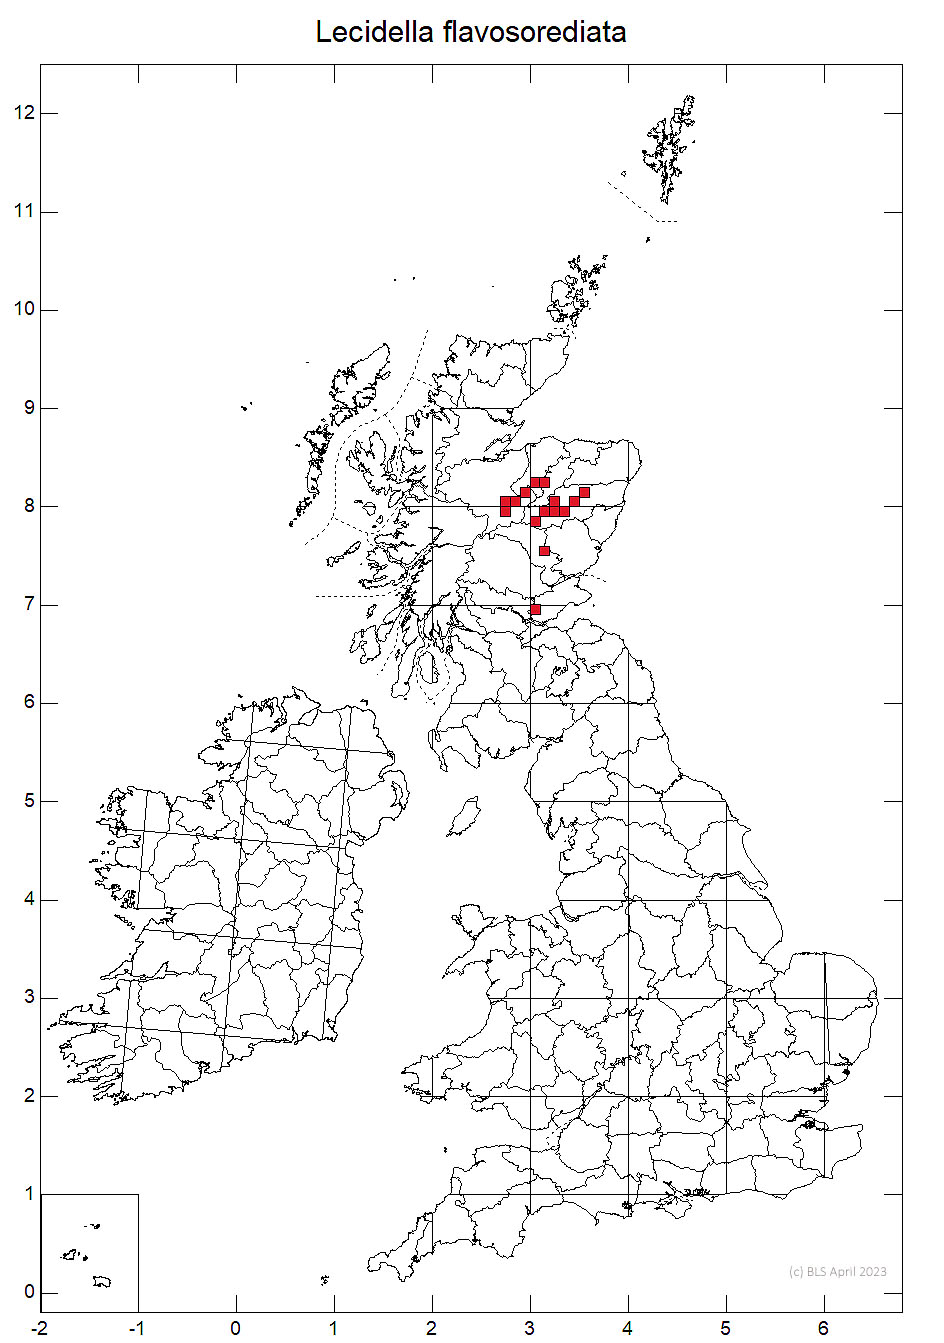 Lecidella flavosorediata 10km sq distribution map